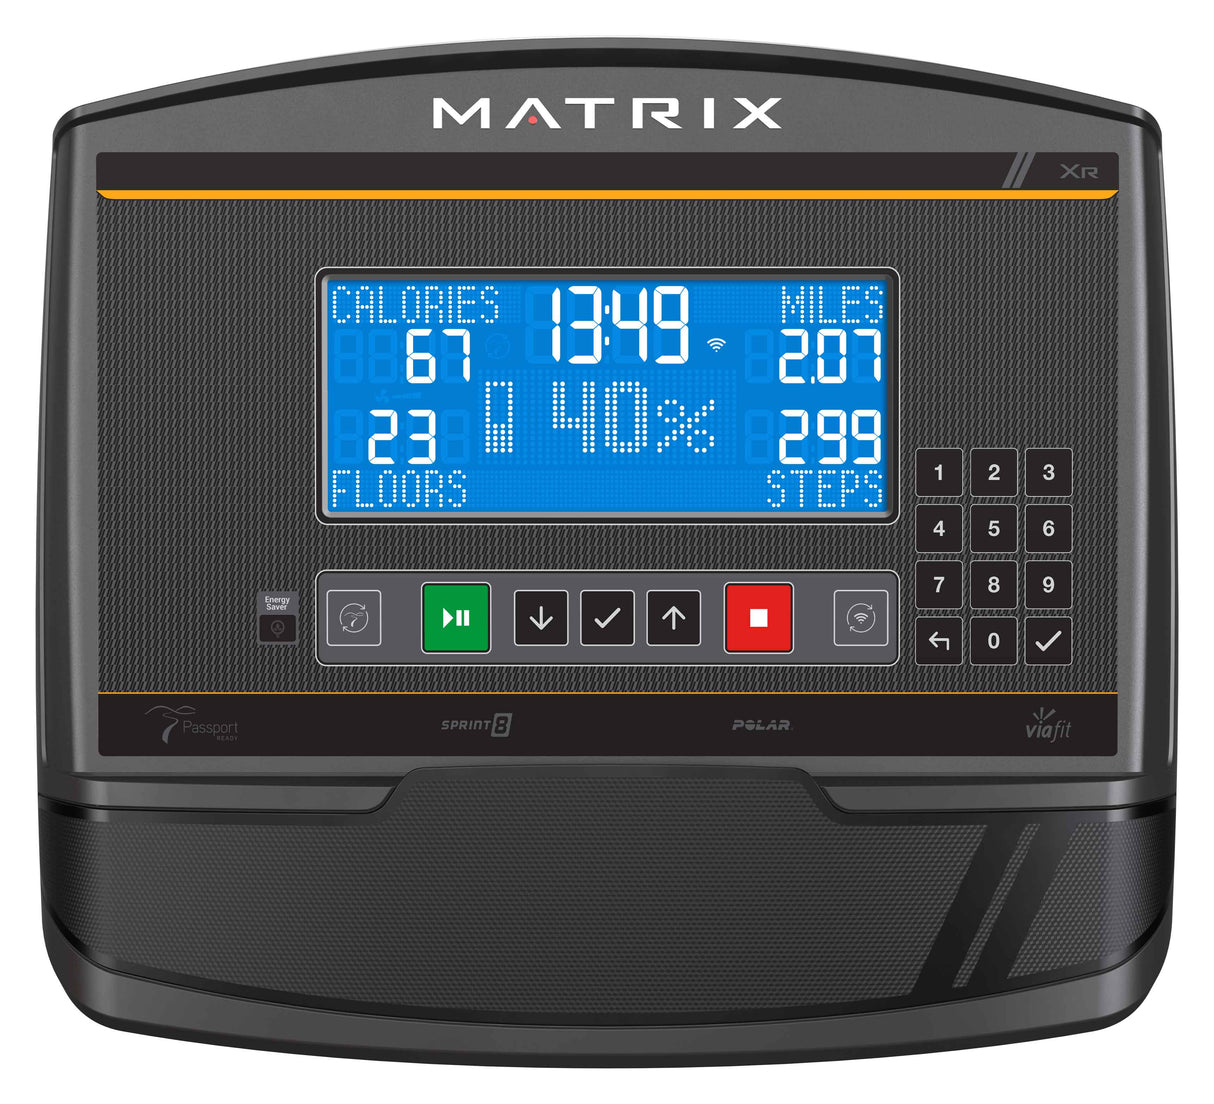 MATRIX C50 XR CLIMBMILL | Johnson Fitness Australia